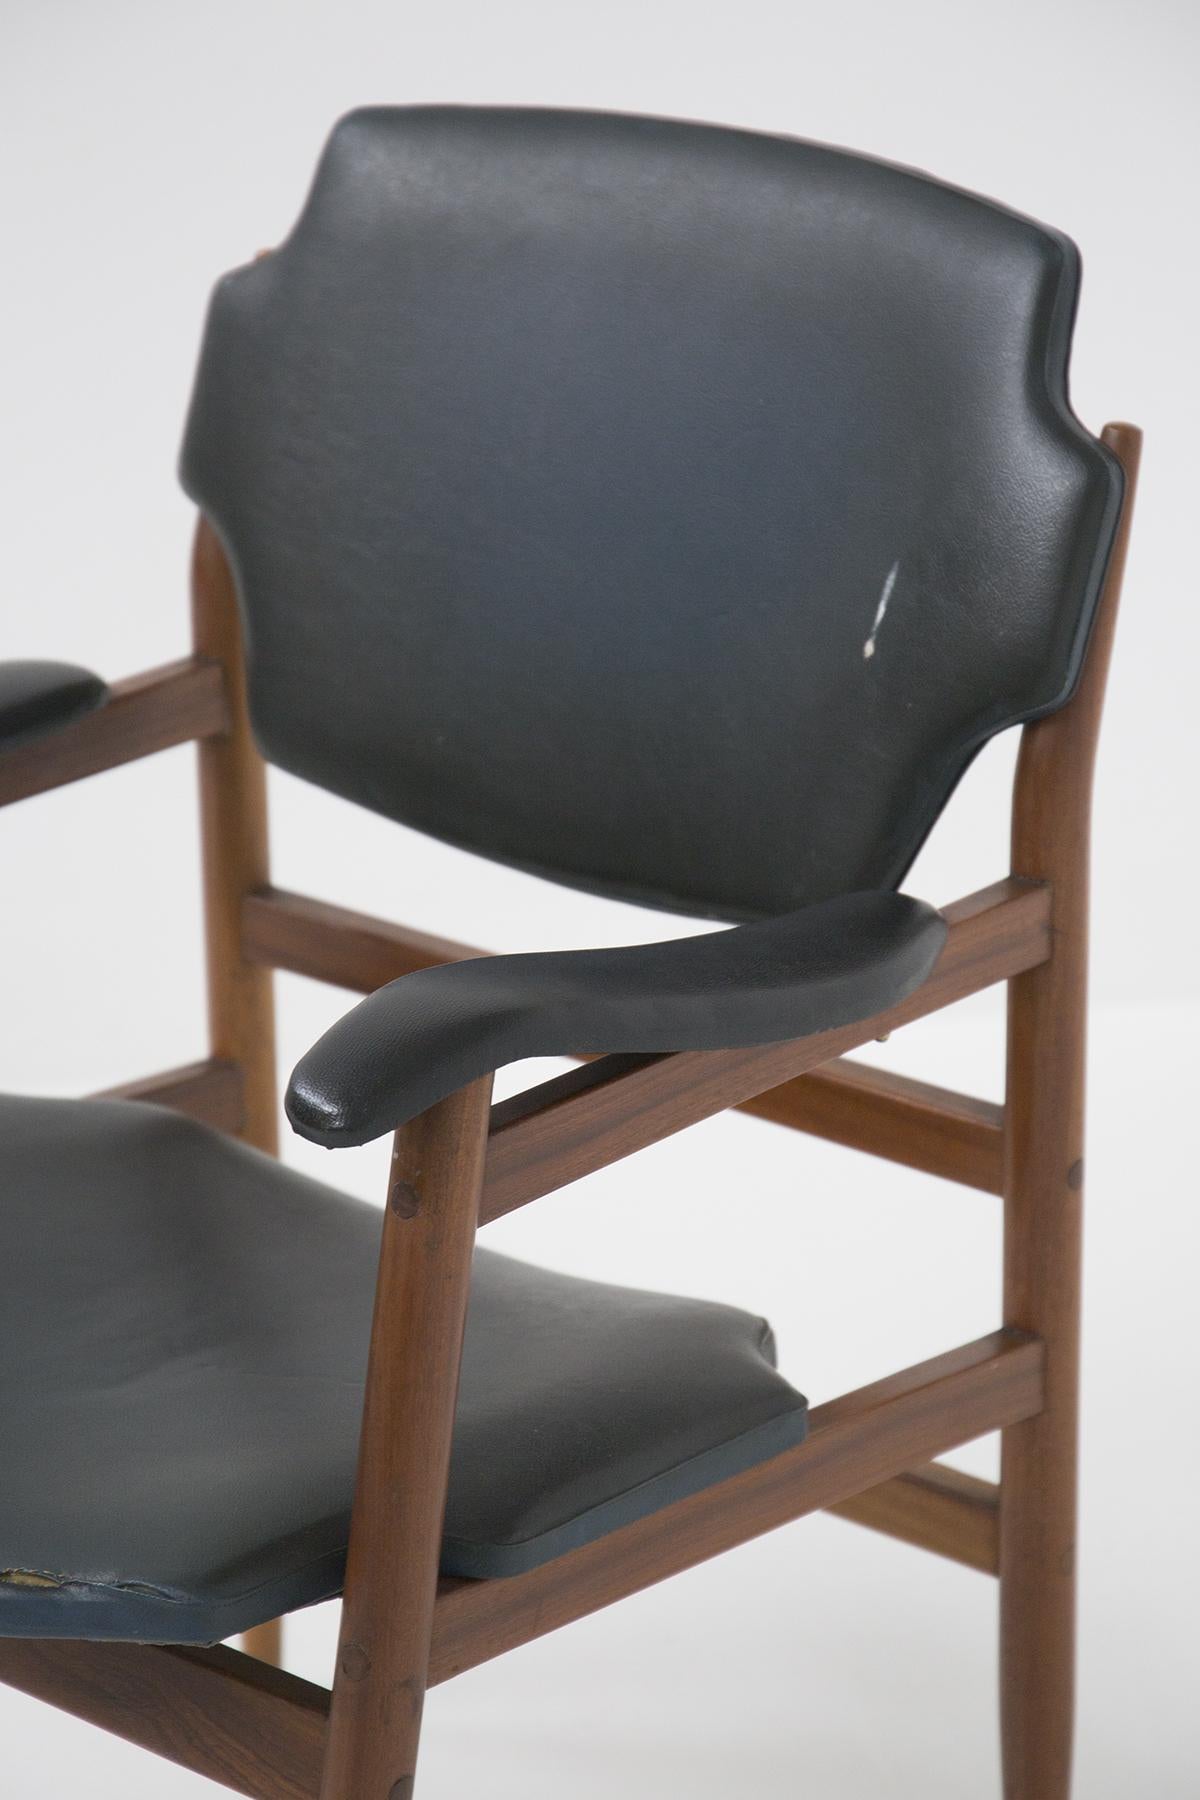 Sweden Vintage Armchair in Wood and Leather att. to Gunnar Asplund 1